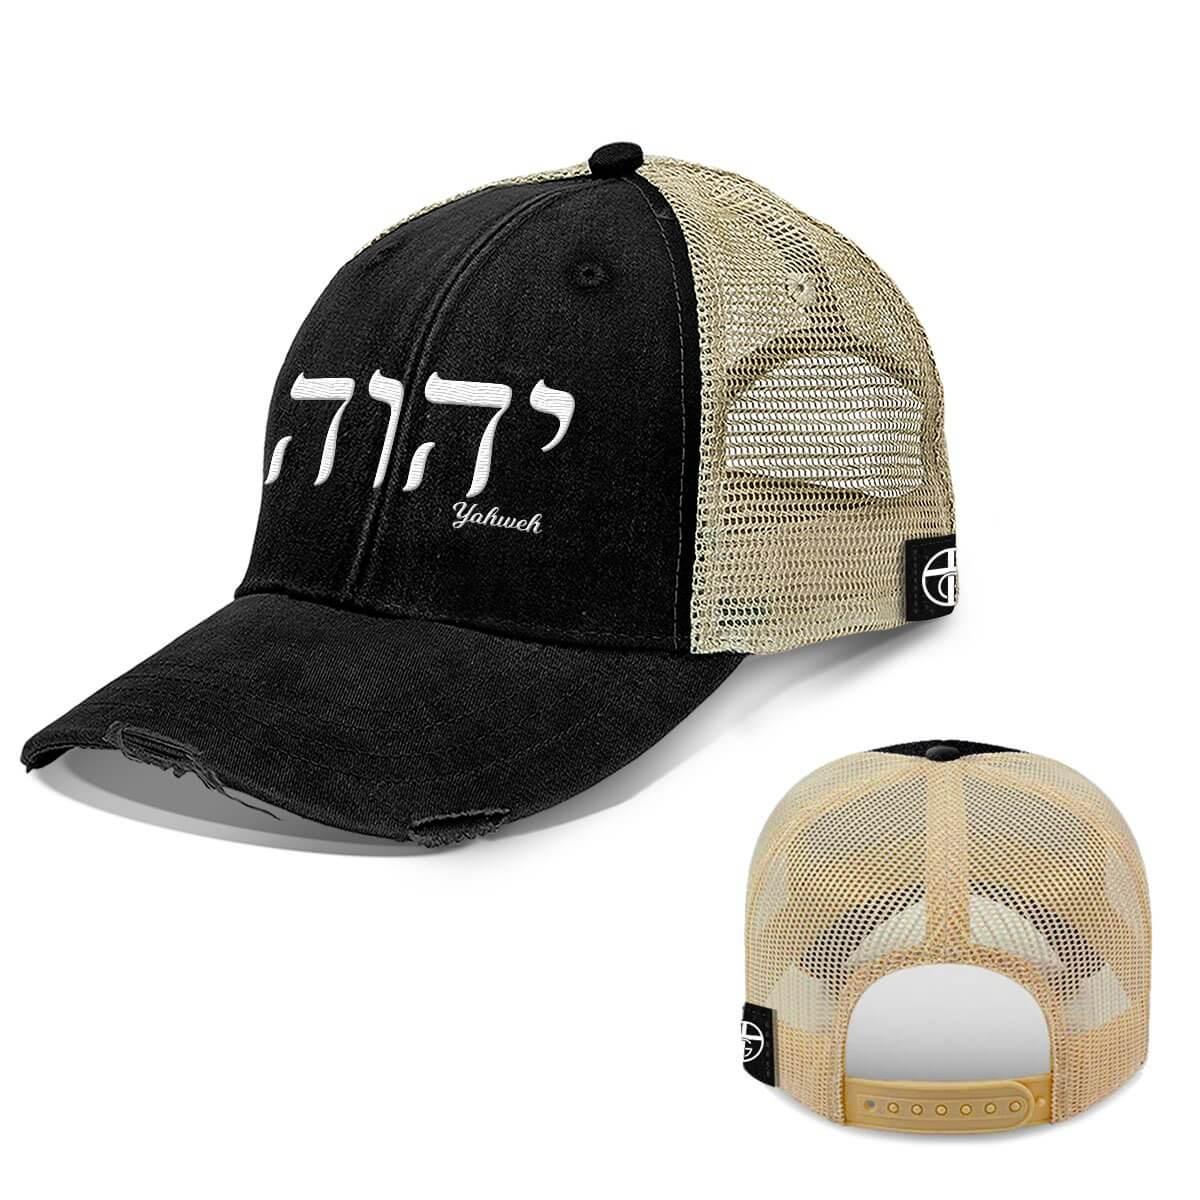 Yahweh Trucker Hats Trucker / Black / One Size